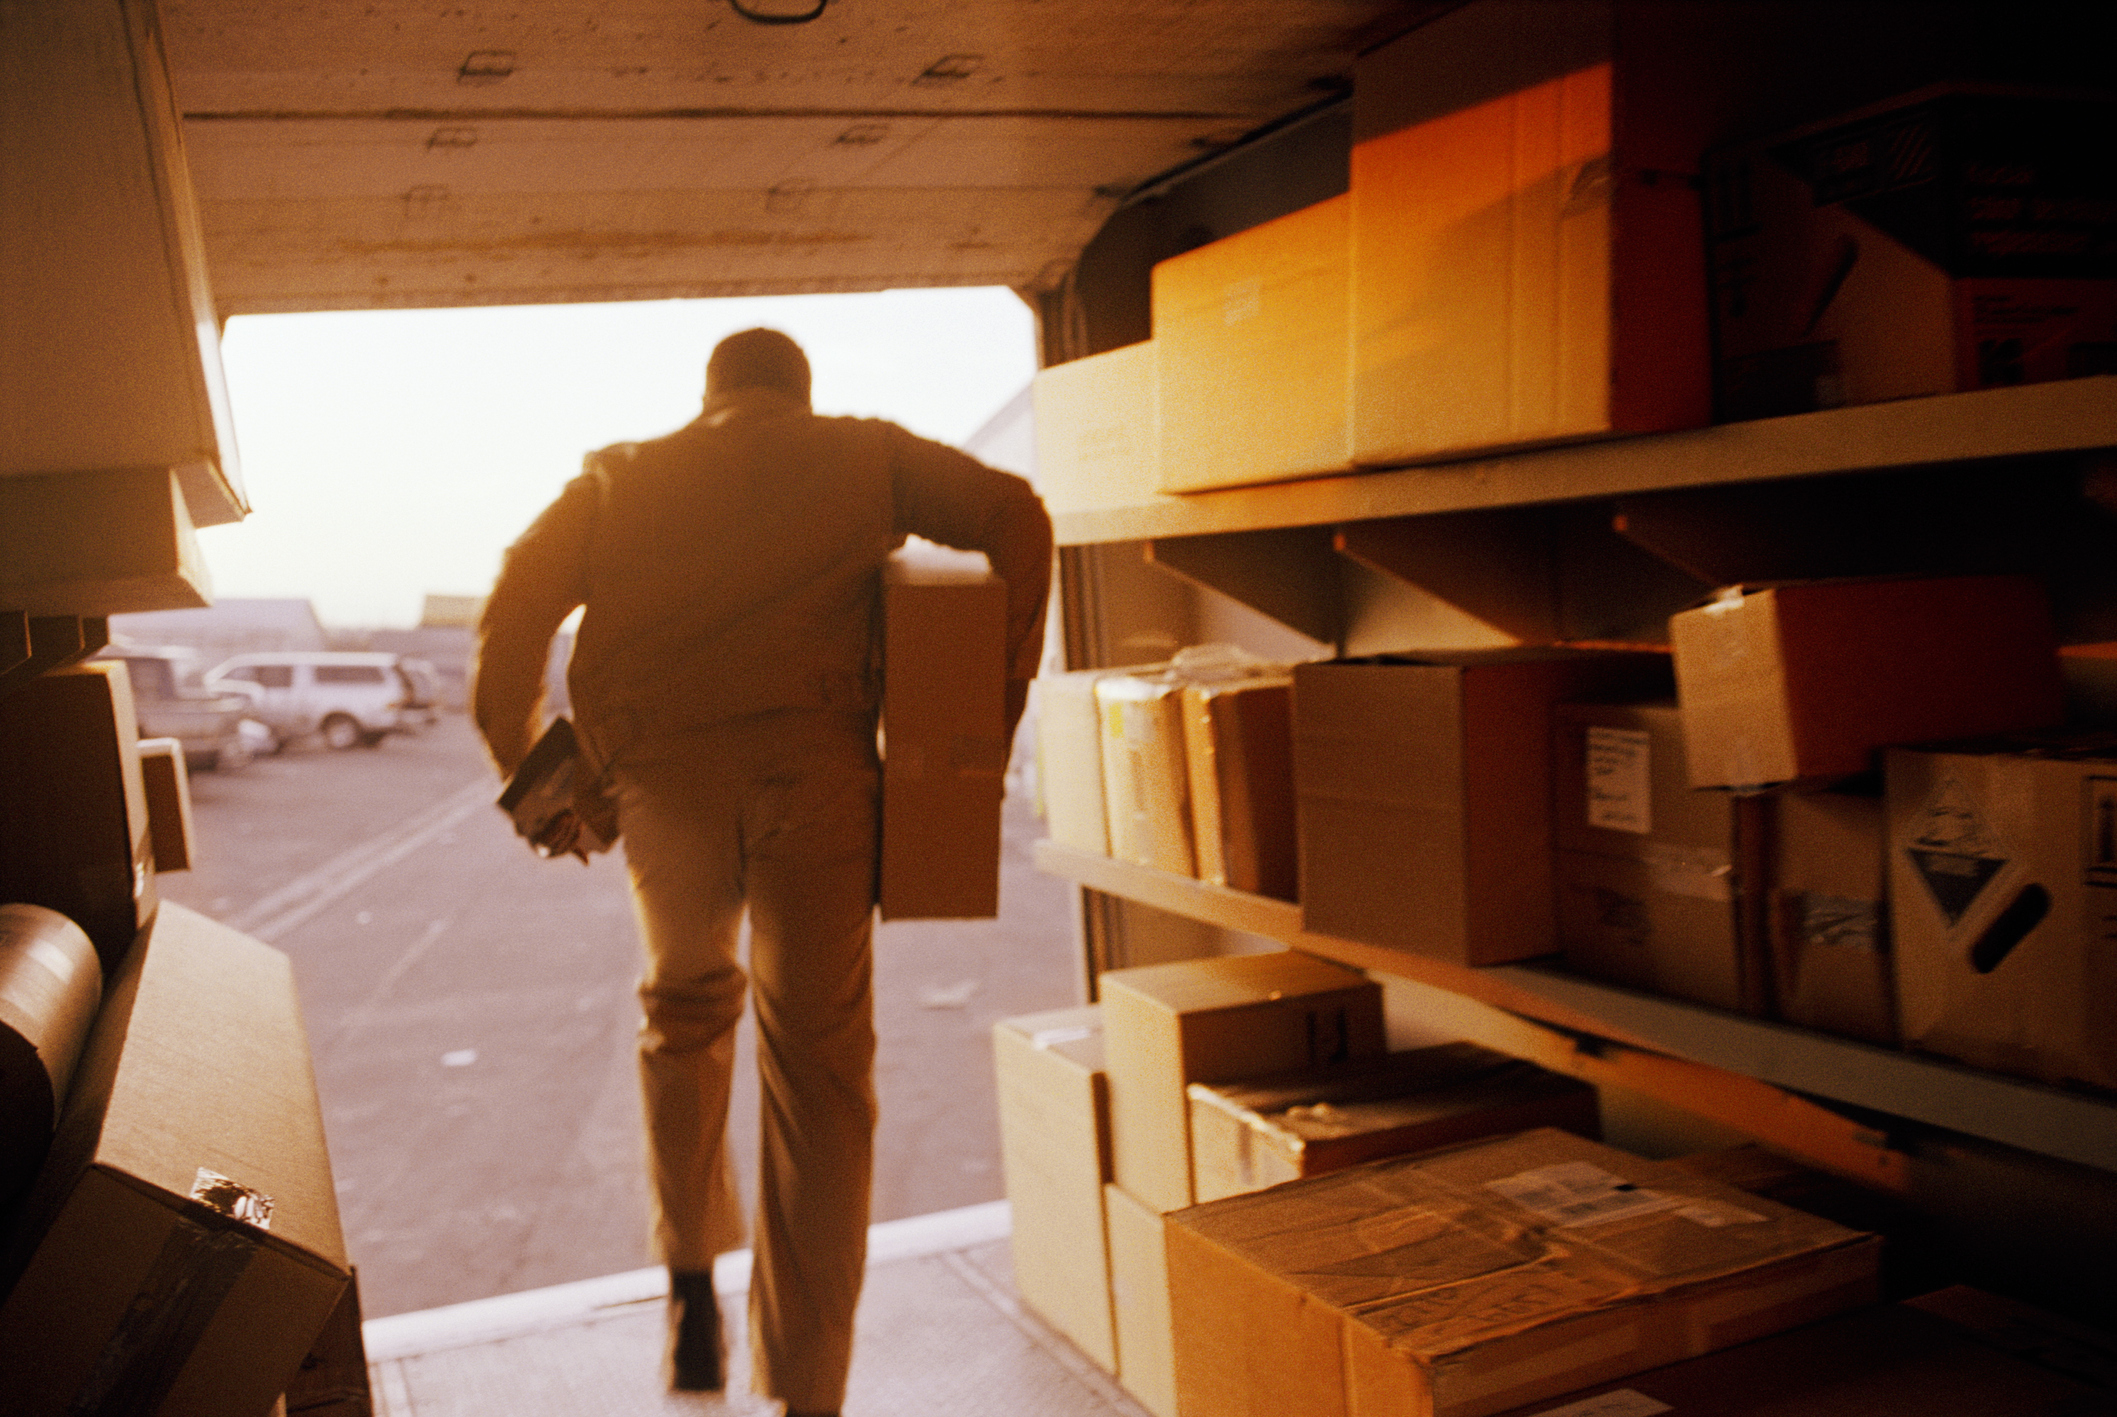 Imagem: homem carregando caixas enquanto sai de carro